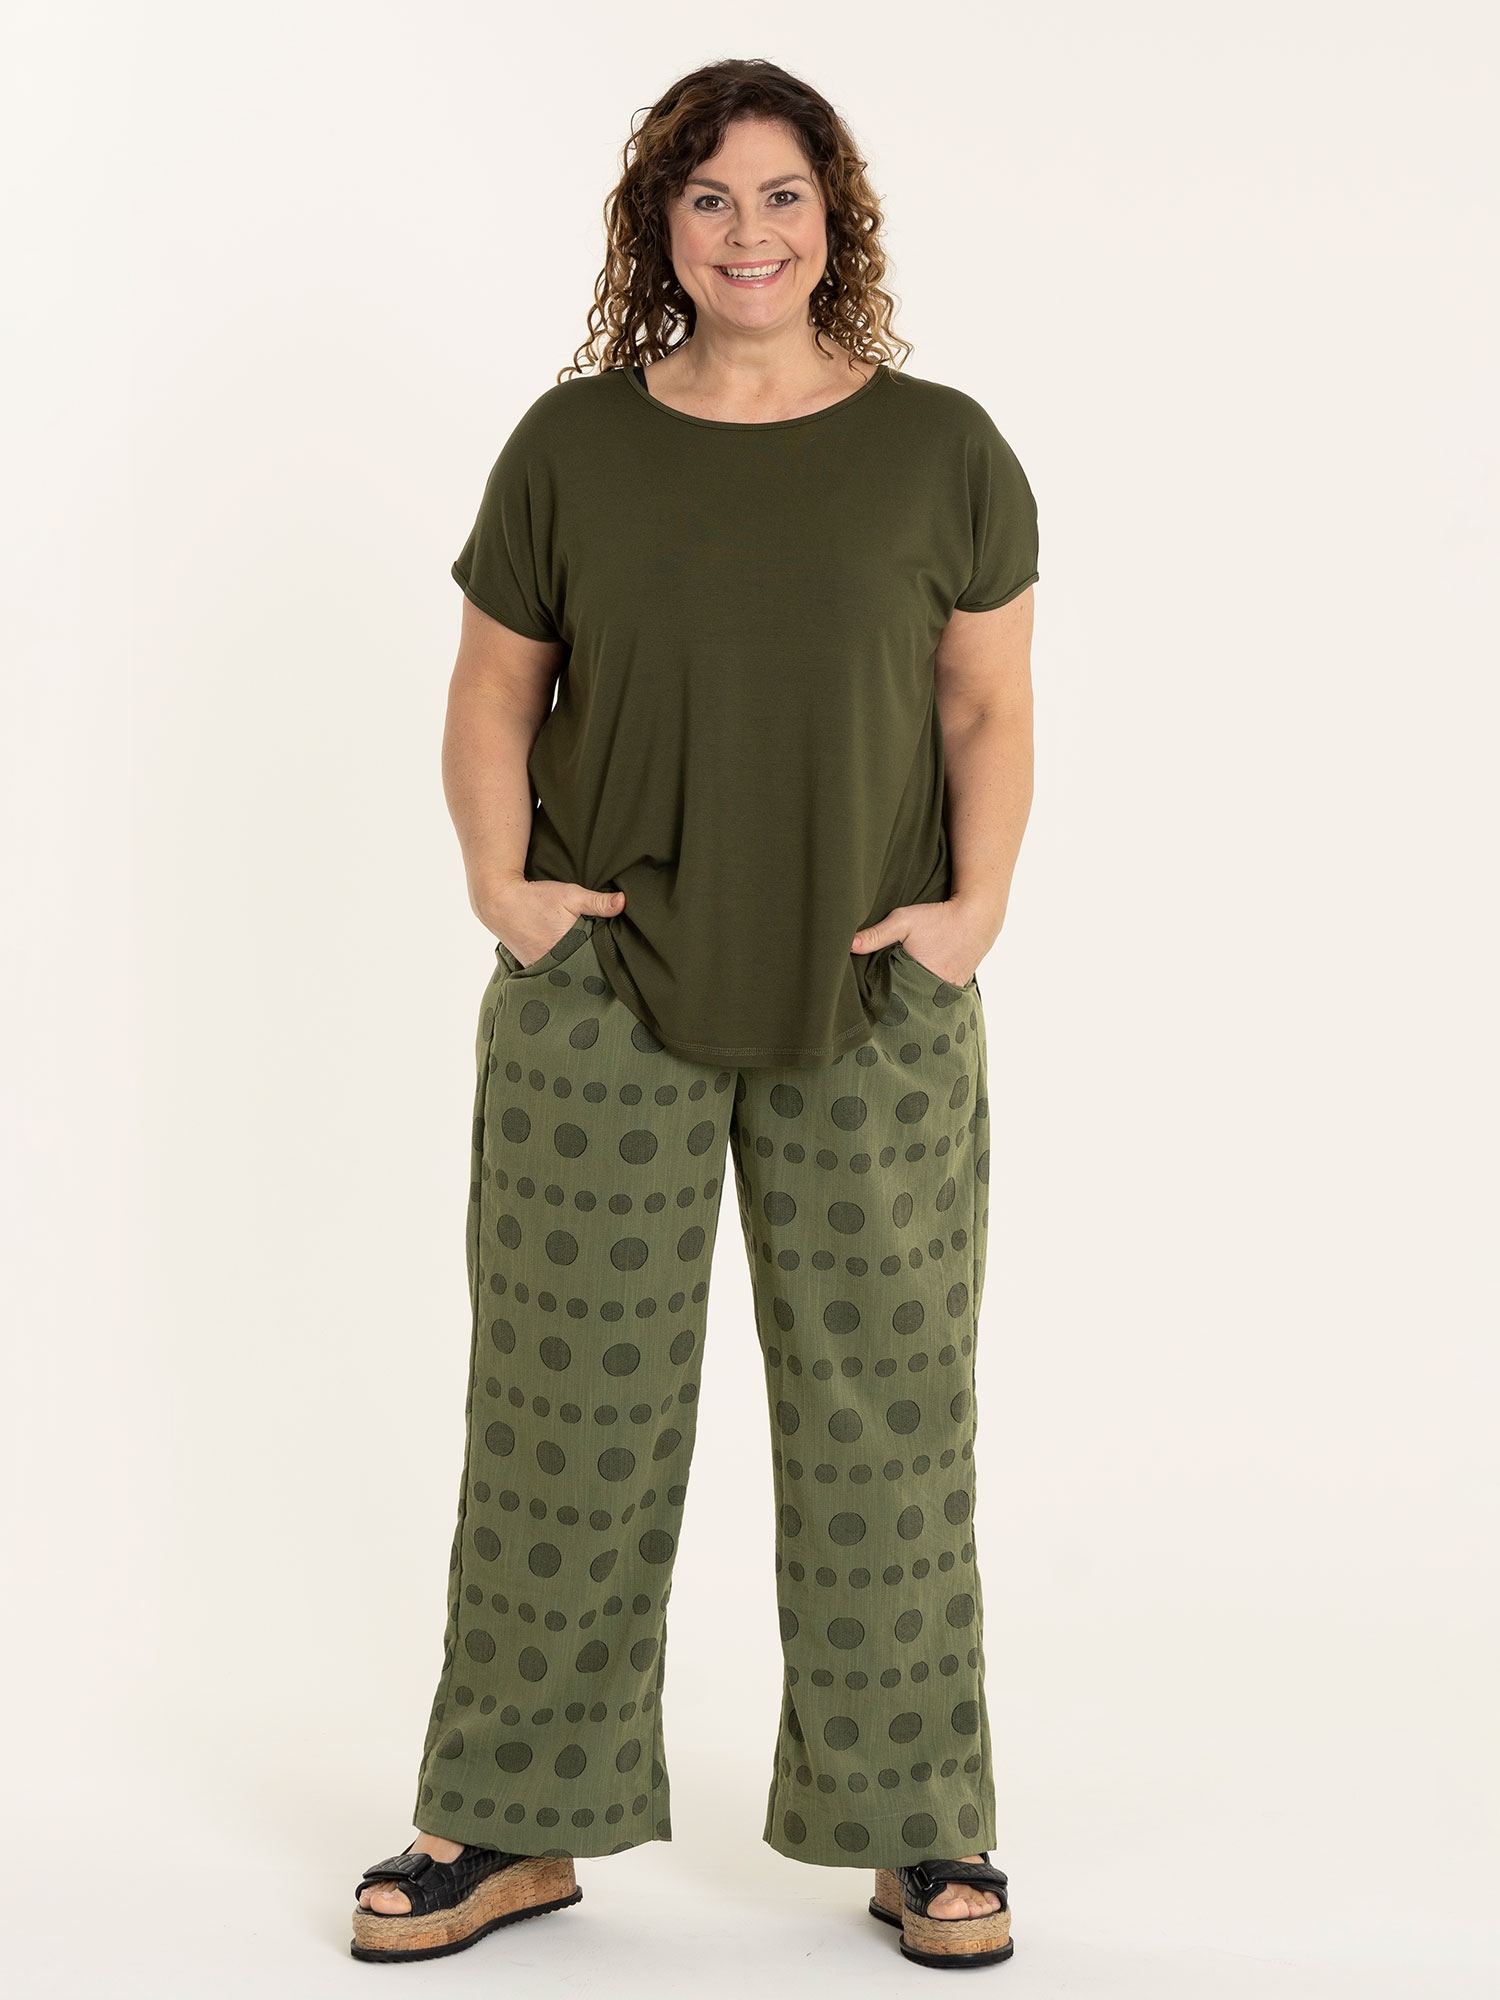 MARGRETHE - Army grønne bukser med brede ben og smukt cirkel mønster fra Gozzip